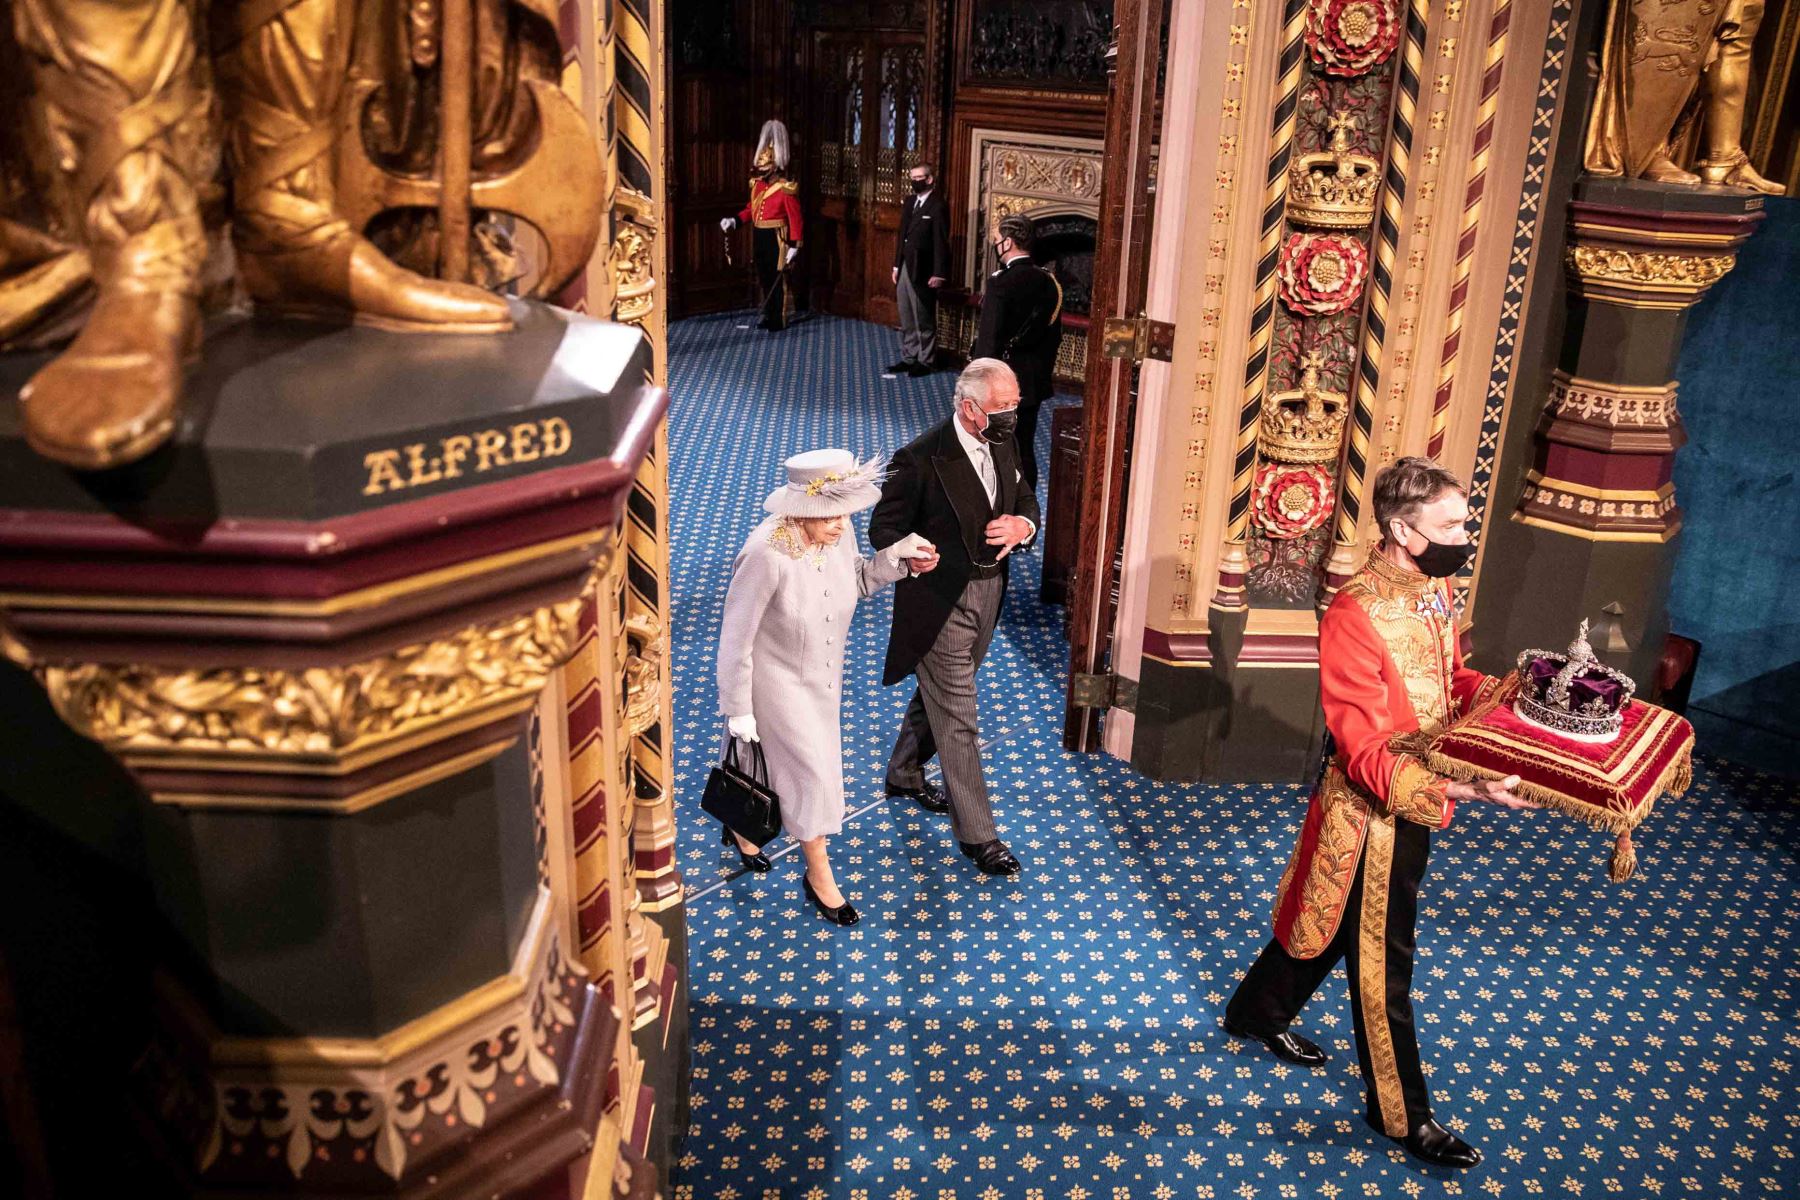 Foto de archivo tomada el 11 de mayo de 2021, la Reina Isabel II de Gran Bretaña y el Príncipe Carlos de Gales de Gran Bretaña caminan detrás de la Corona del Estado Imperial mientras recorren la Galería Real, después del discurso de la Reina. Foto: AFP